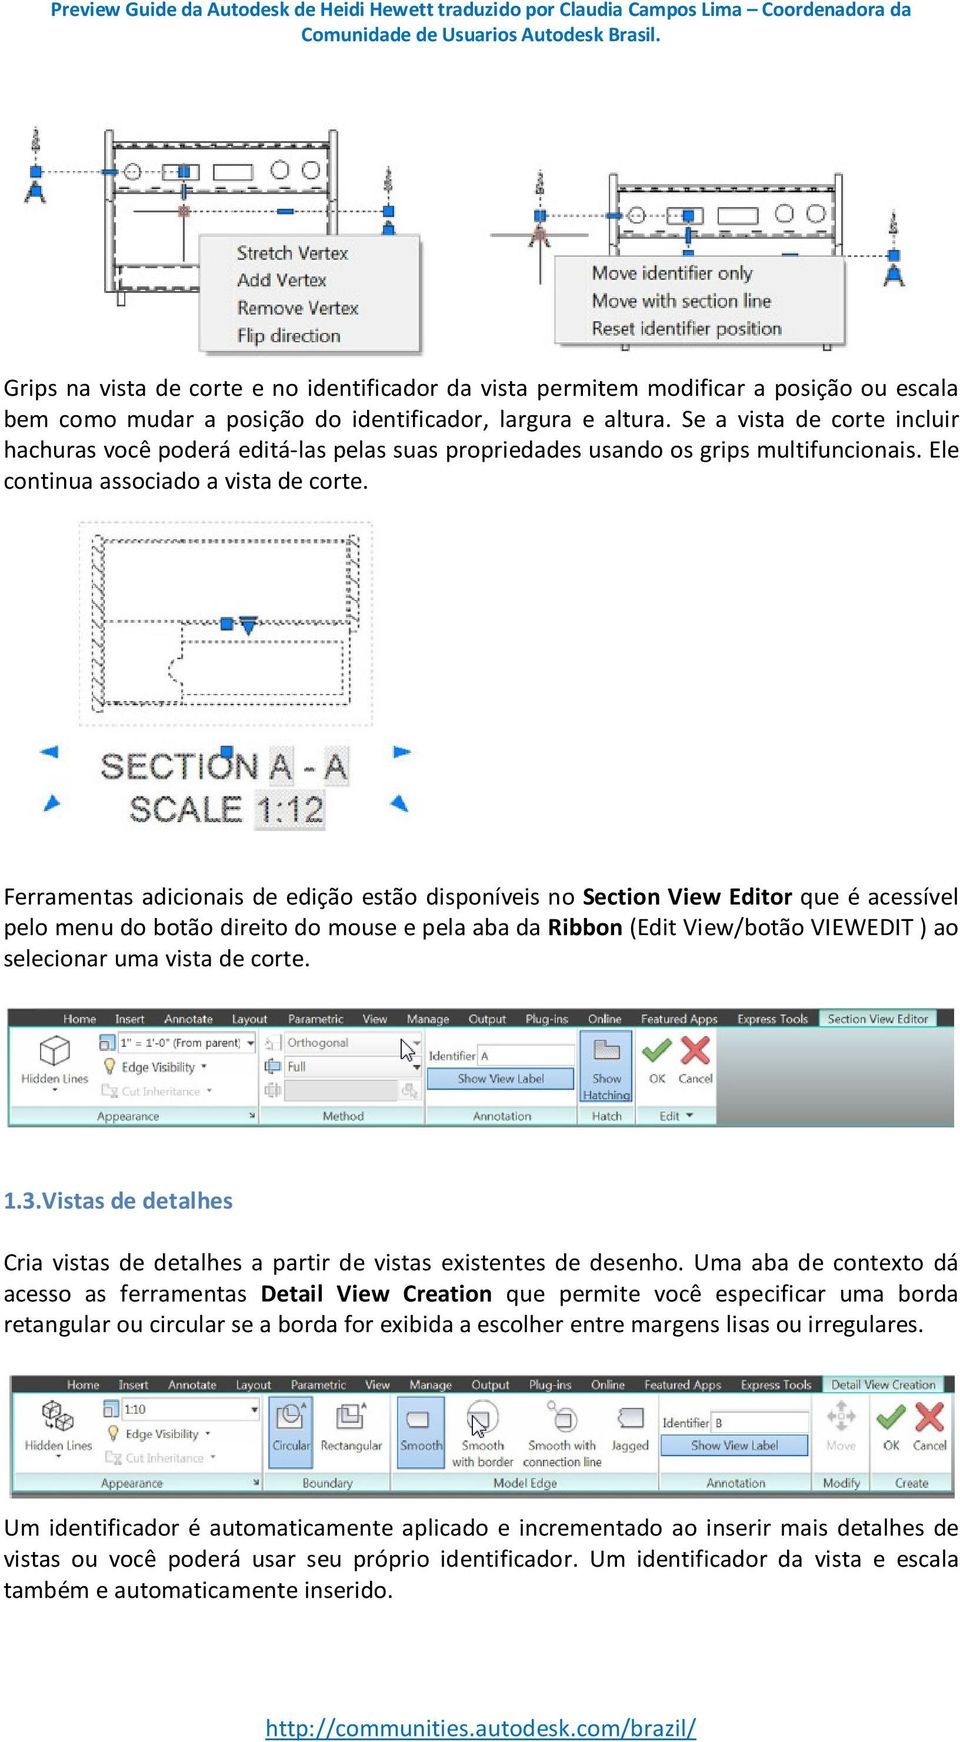 Ferramentas adicionais de edição estão disponíveis no Section View Editor que é acessível pelo menu do botão direito do mouse e pela aba da Ribbon (Edit View/botão VIEWEDIT ) ao selecionar uma vista